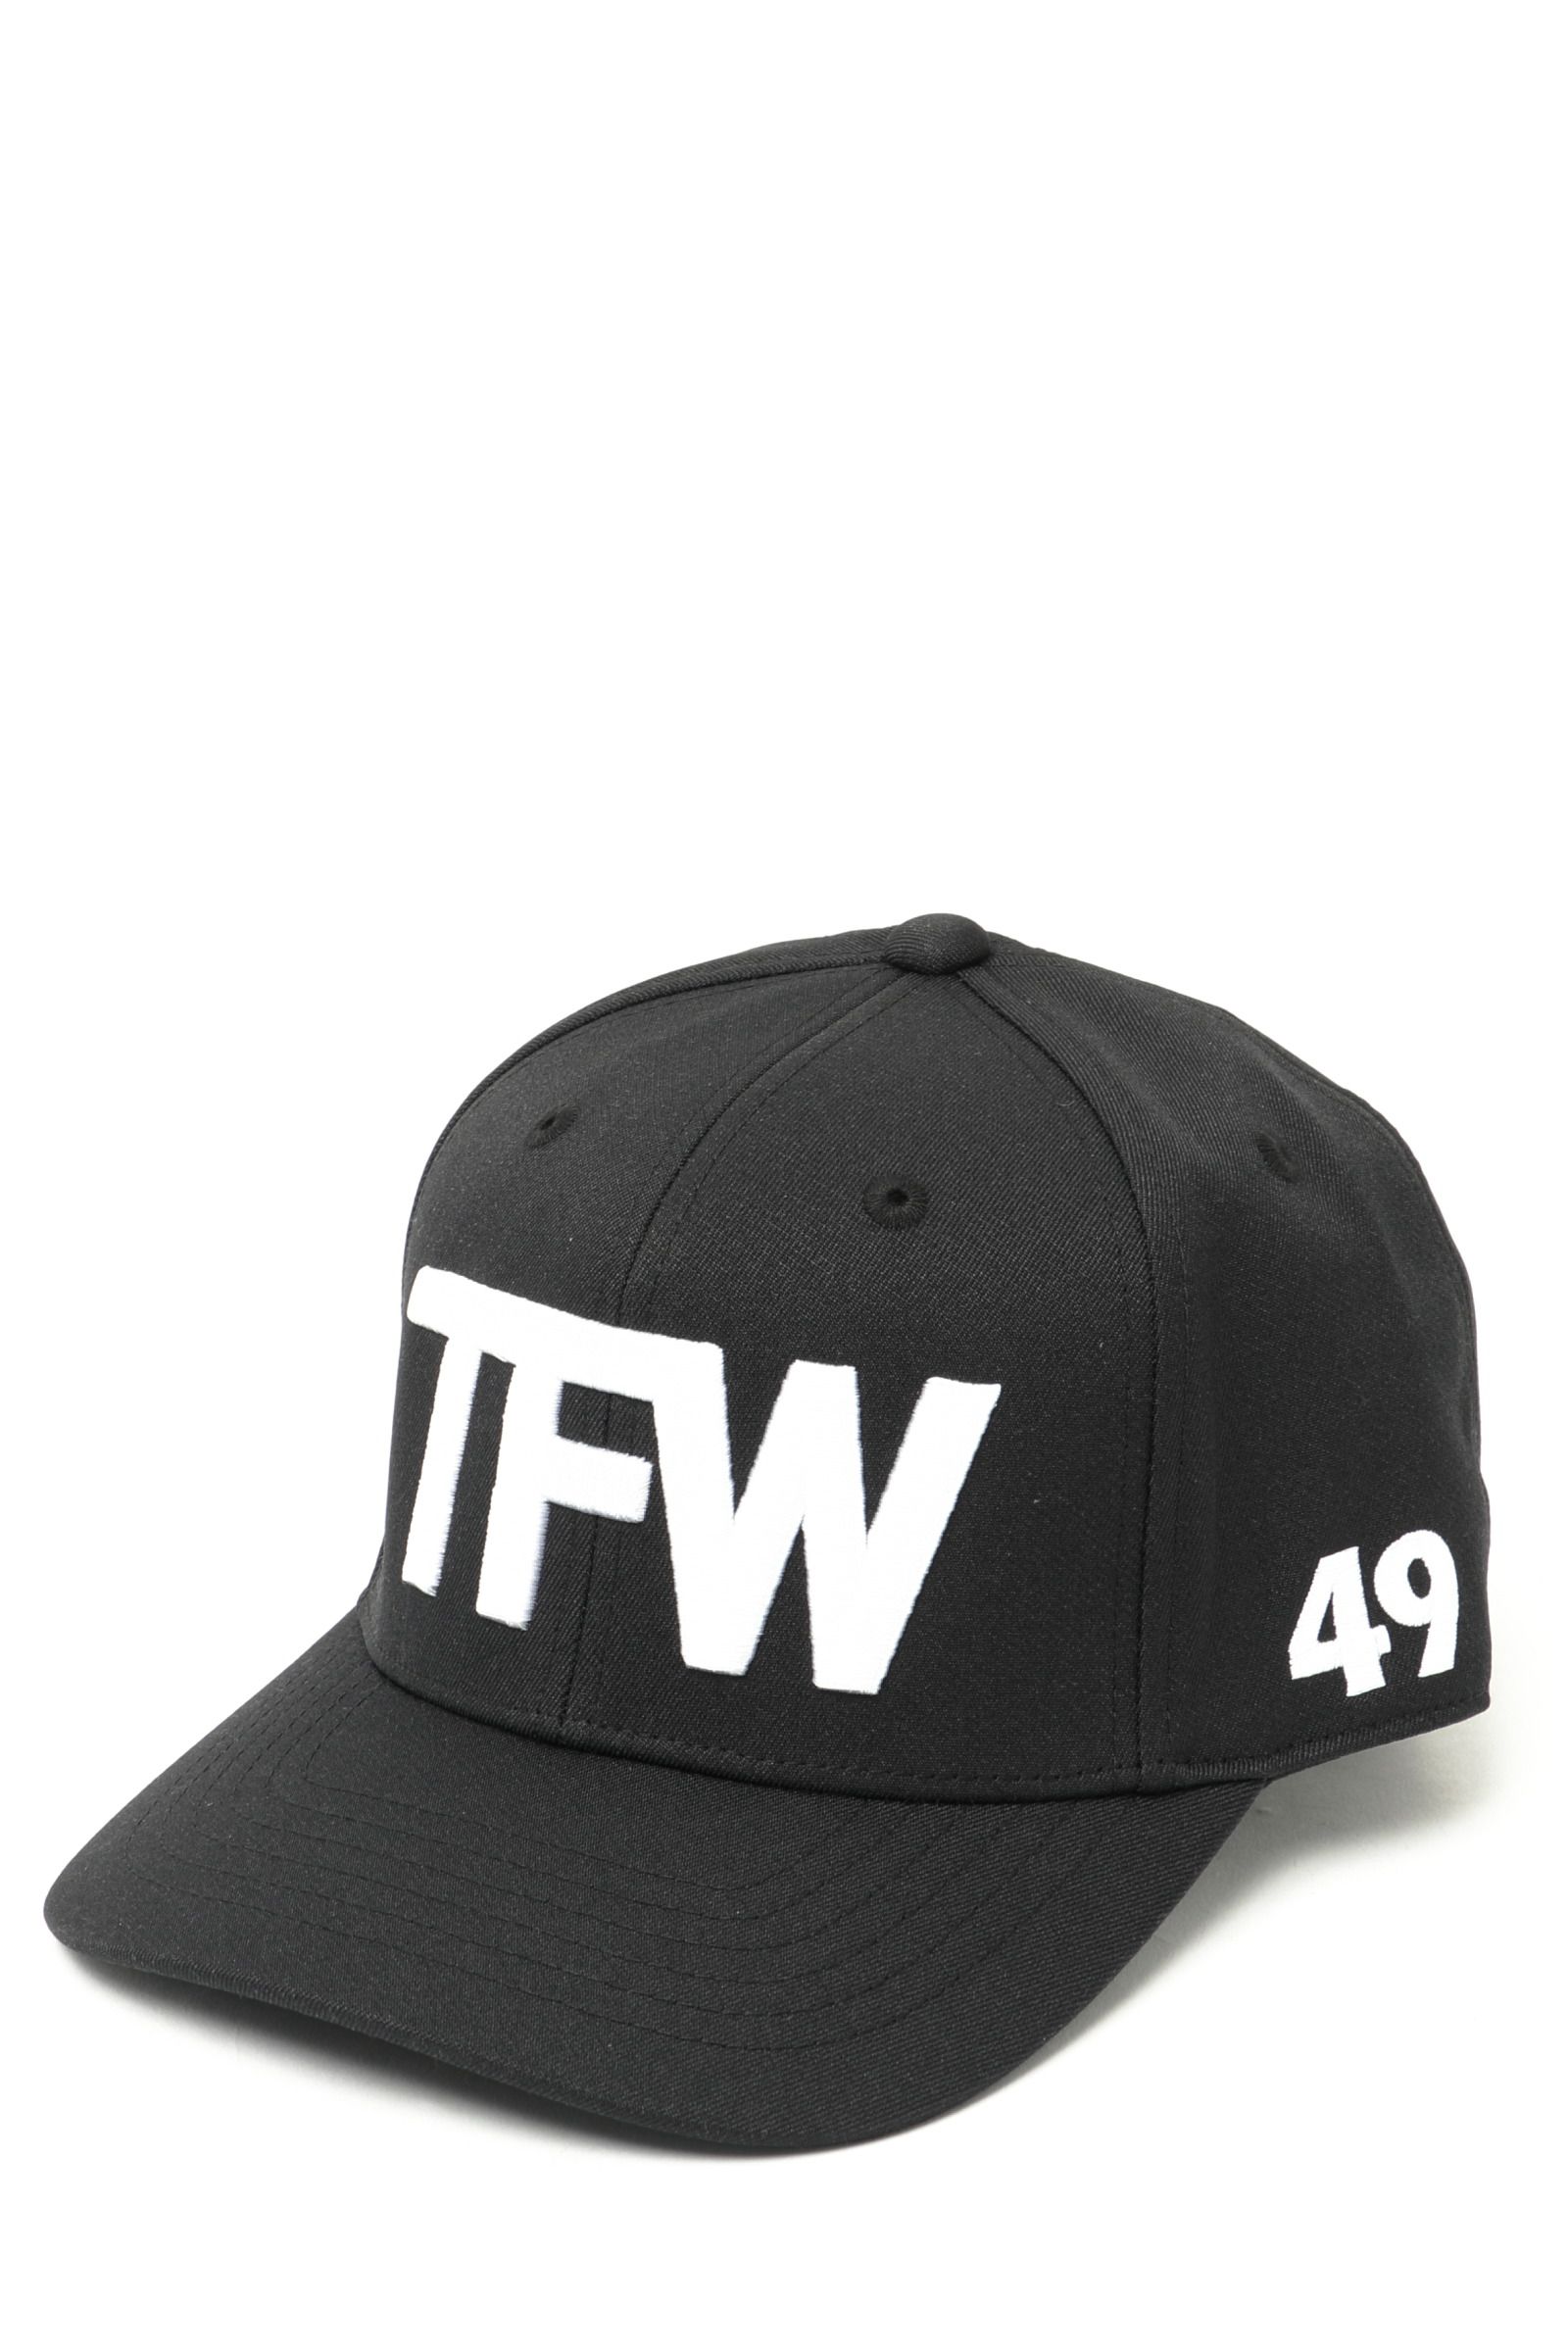 TFW49 - TFW CAP ポリエステル コットン TFWロゴ キャップ / ブラック